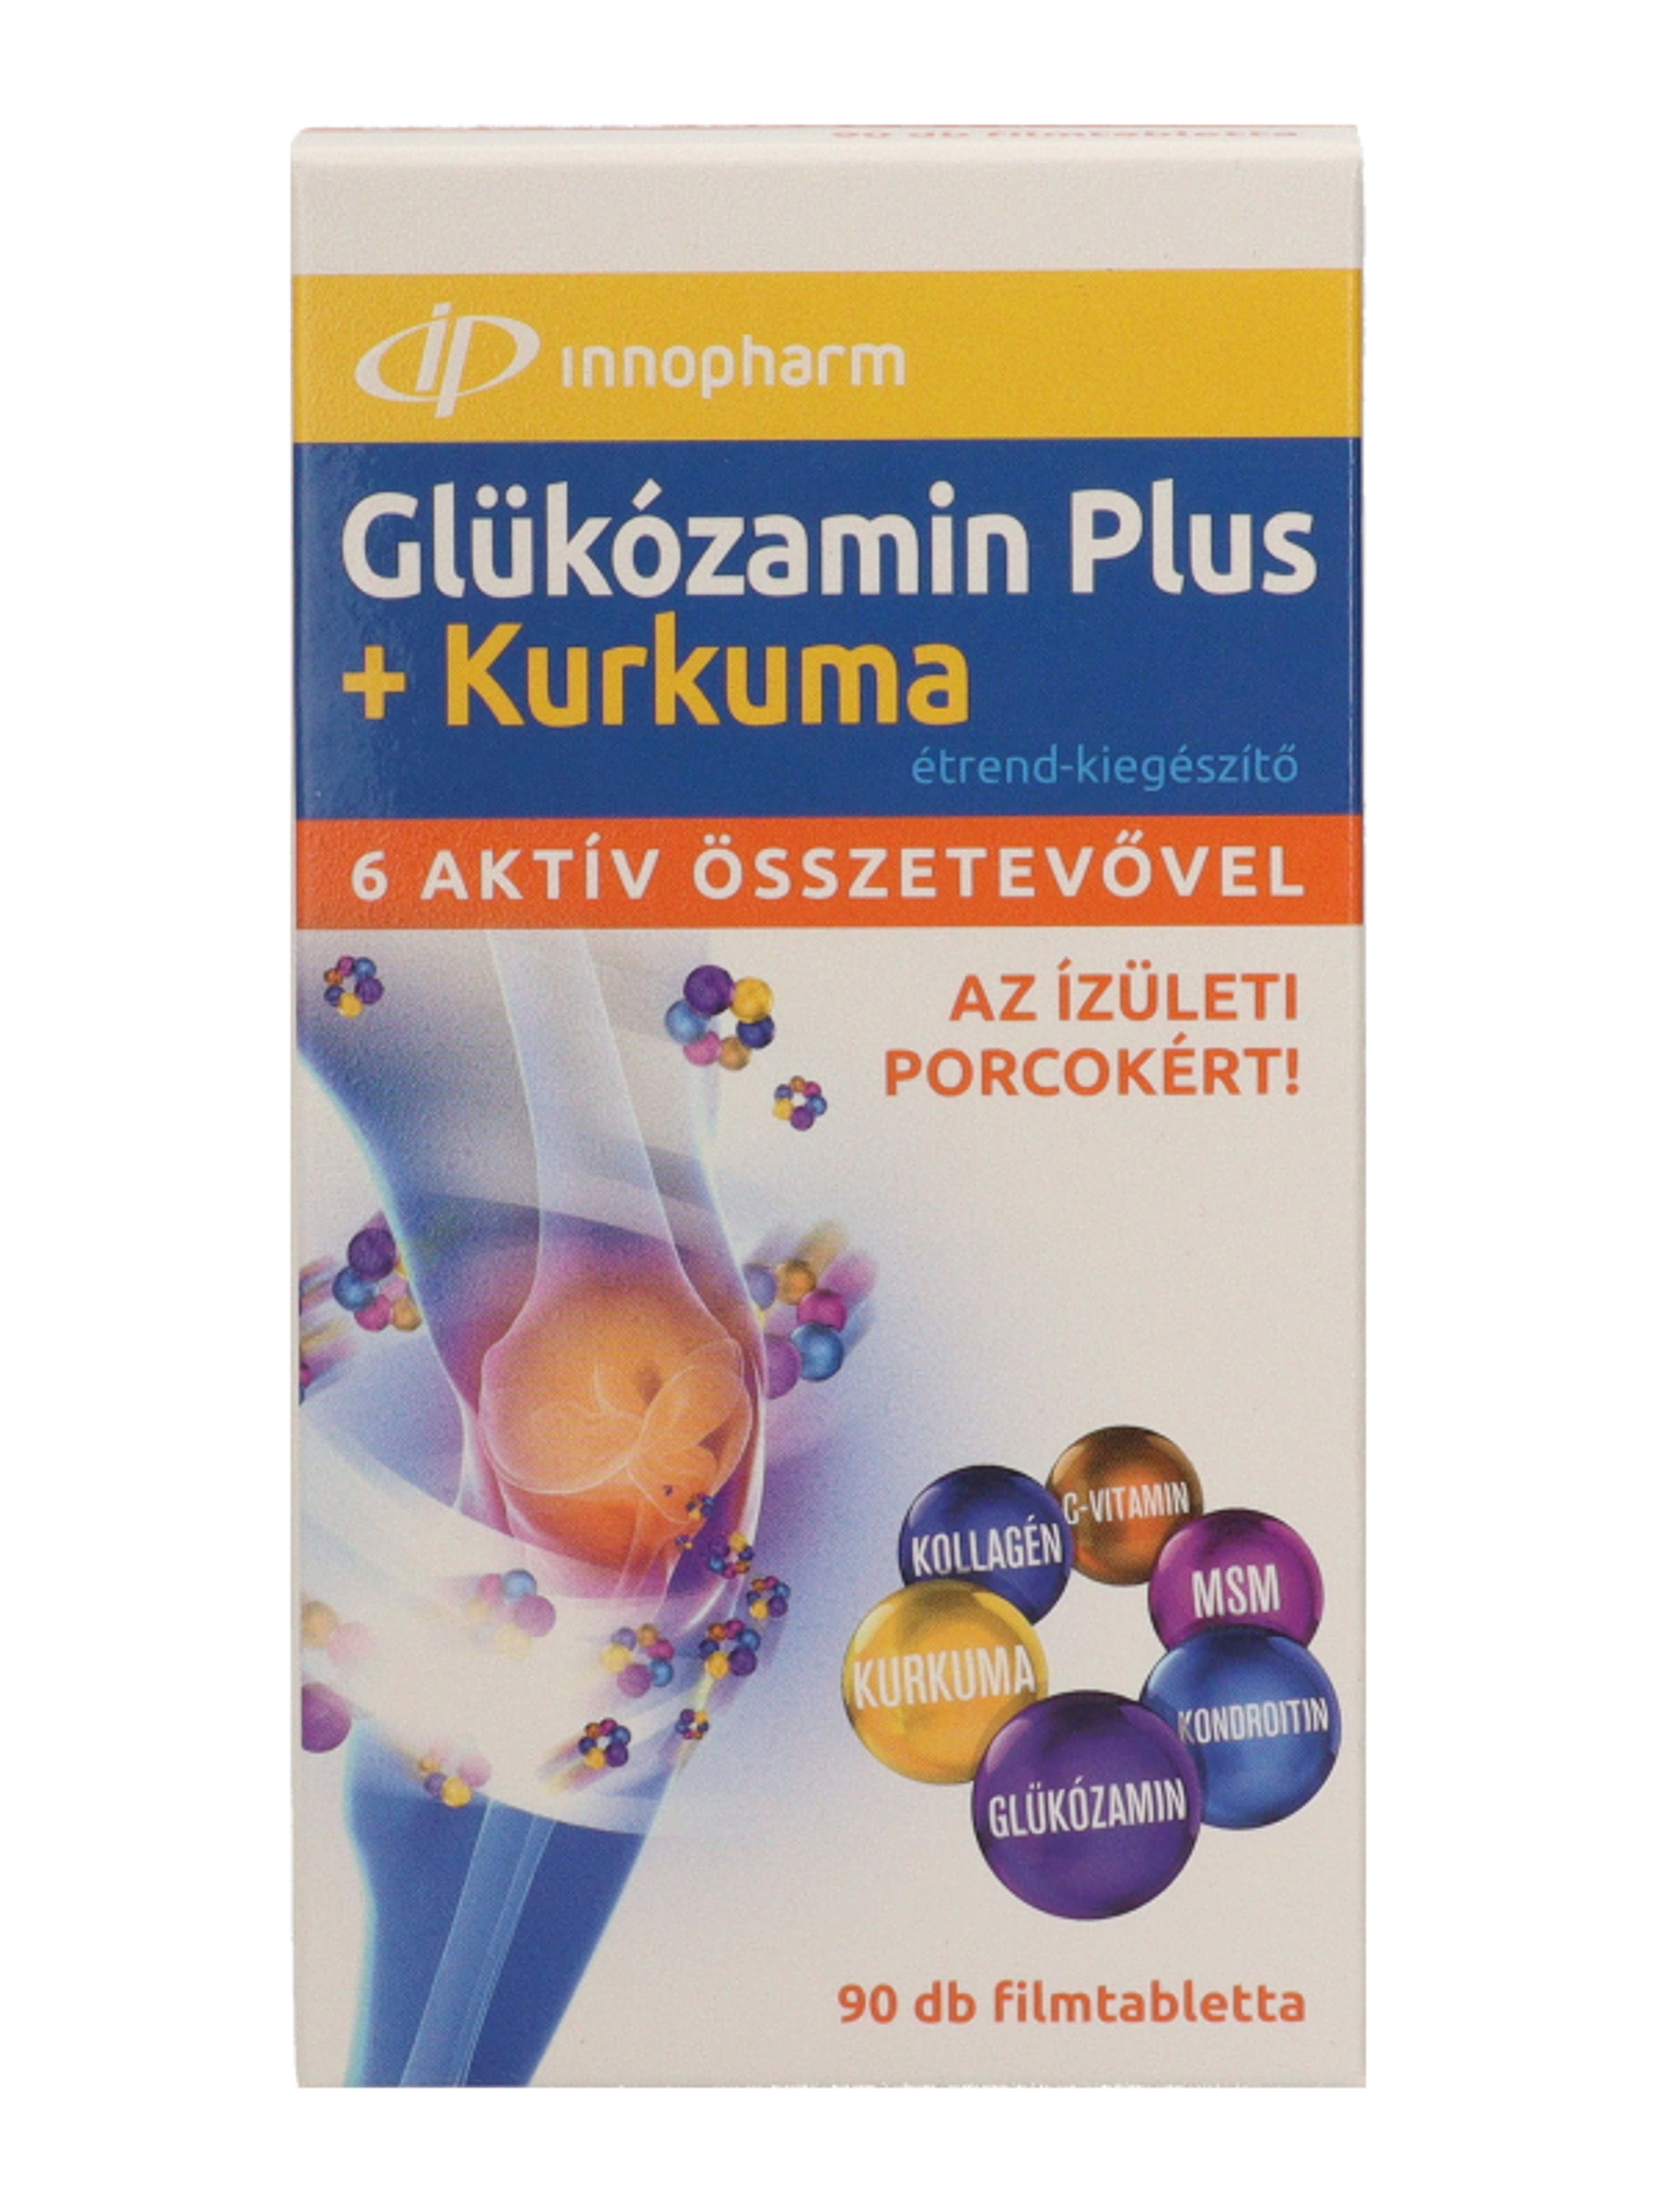 Innopharm glukozamin plus + kurkuma filmtabletta - 90 db